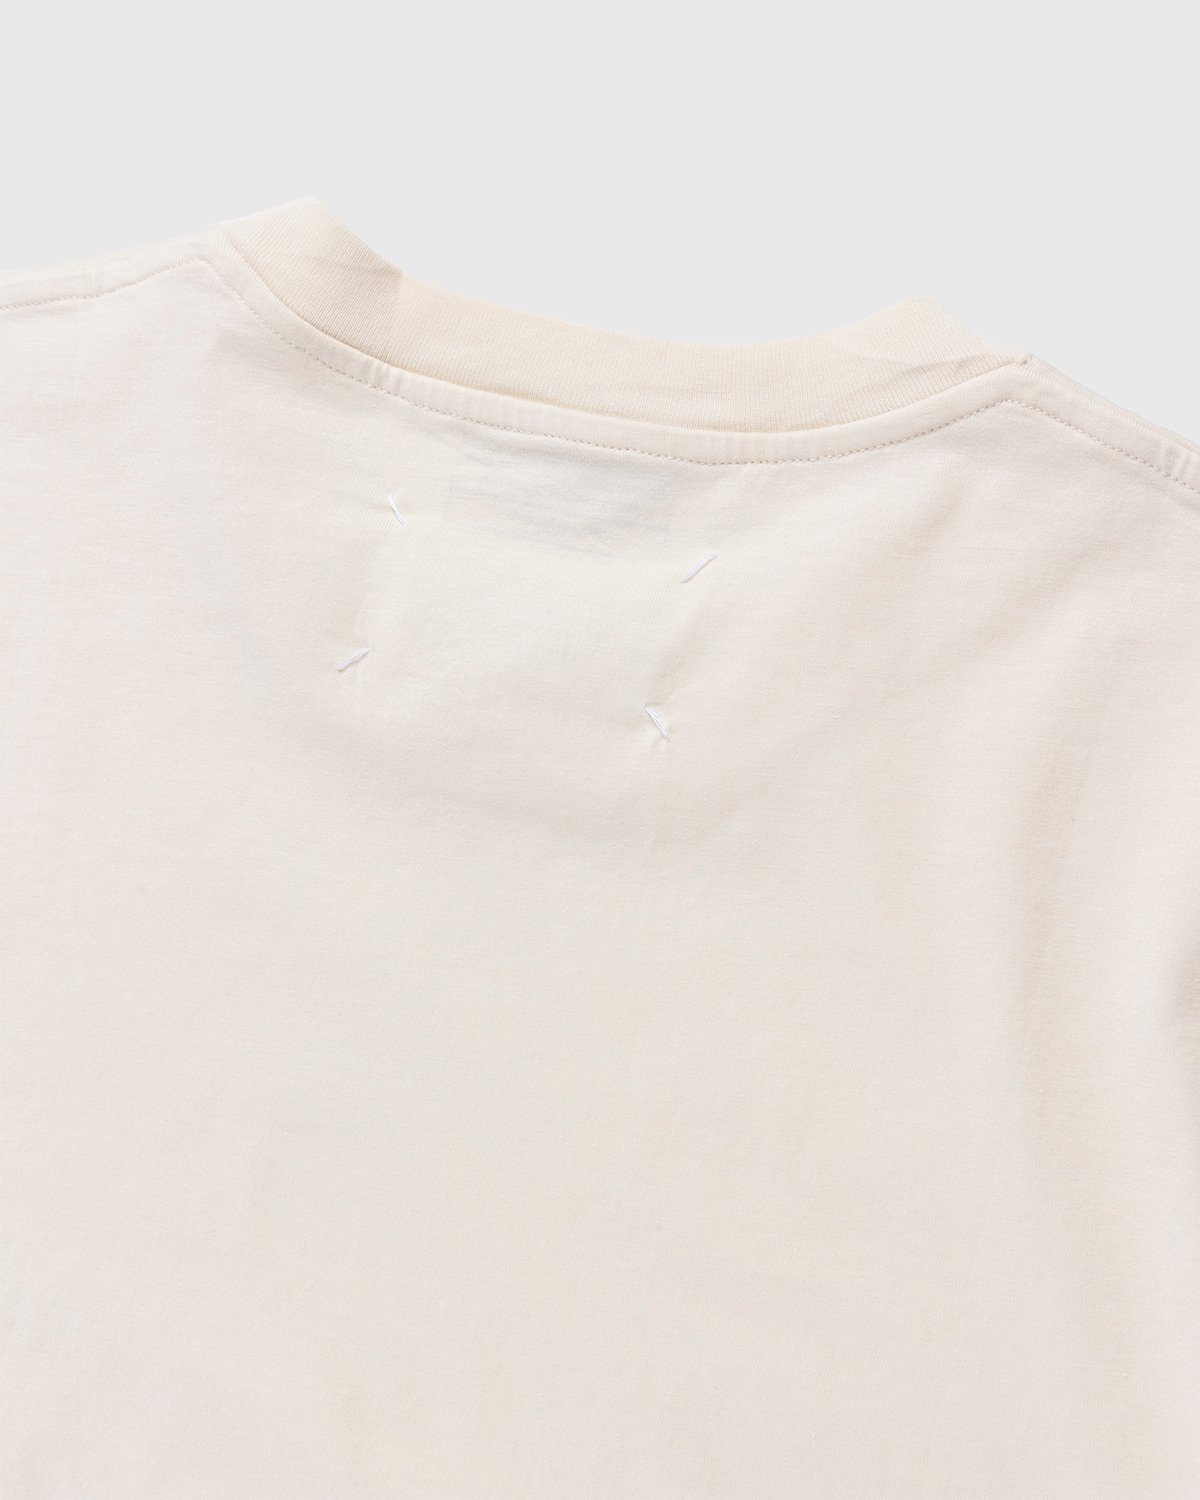 Maison Margiela - Shades of White T-Shirts 3 Pack Multi - Clothing - White - Image 5